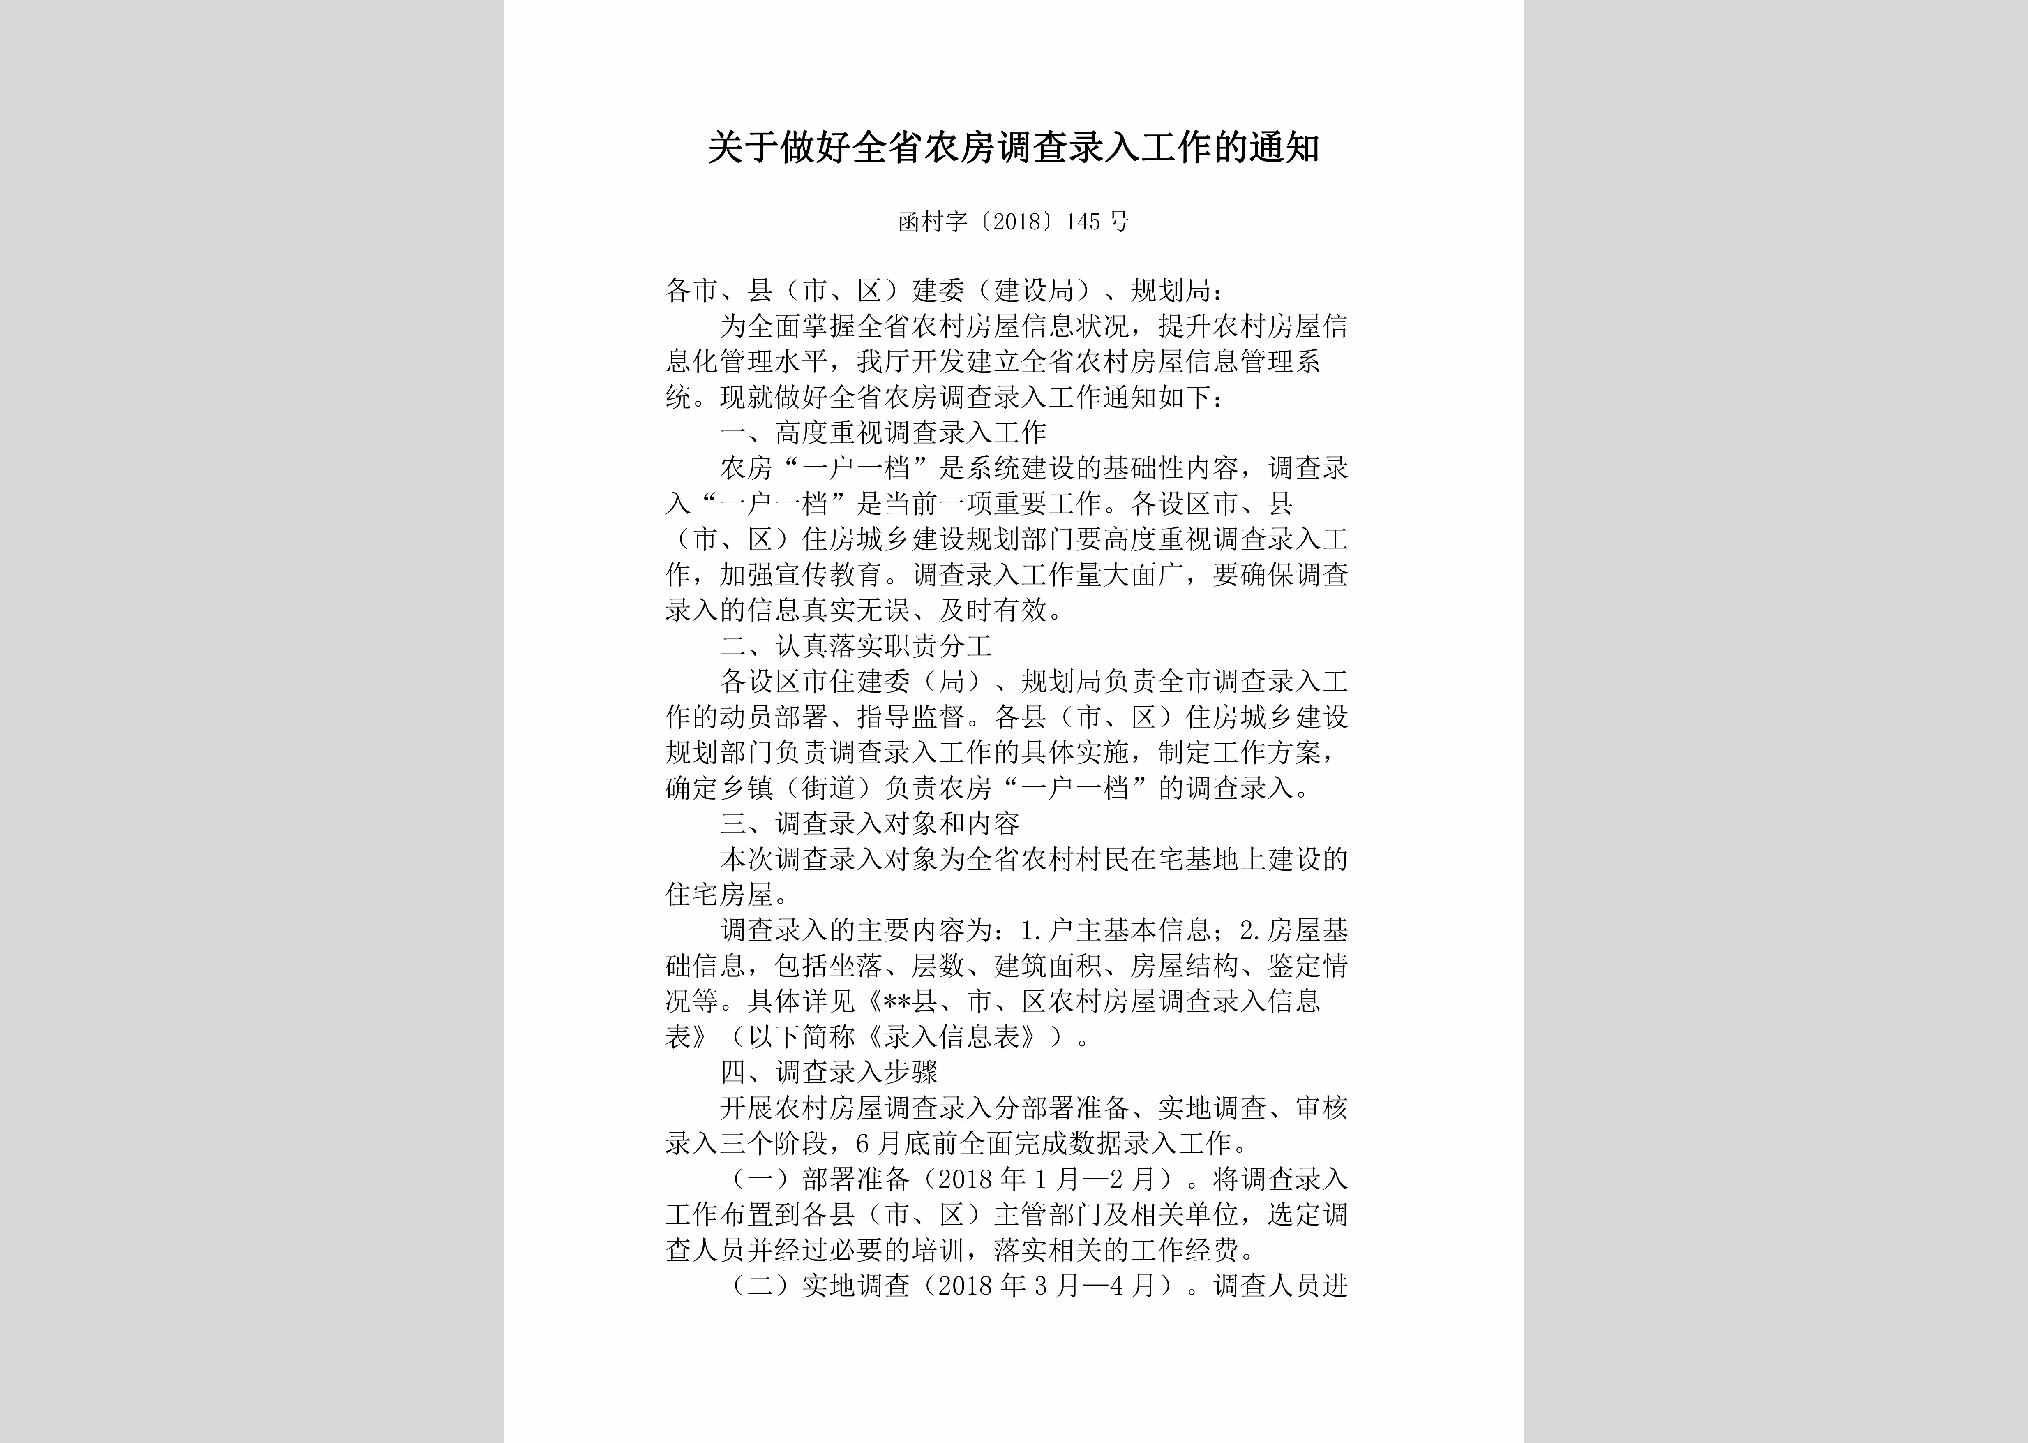 函村字[2018]145号：关于做好全省农房调查录入工作的通知